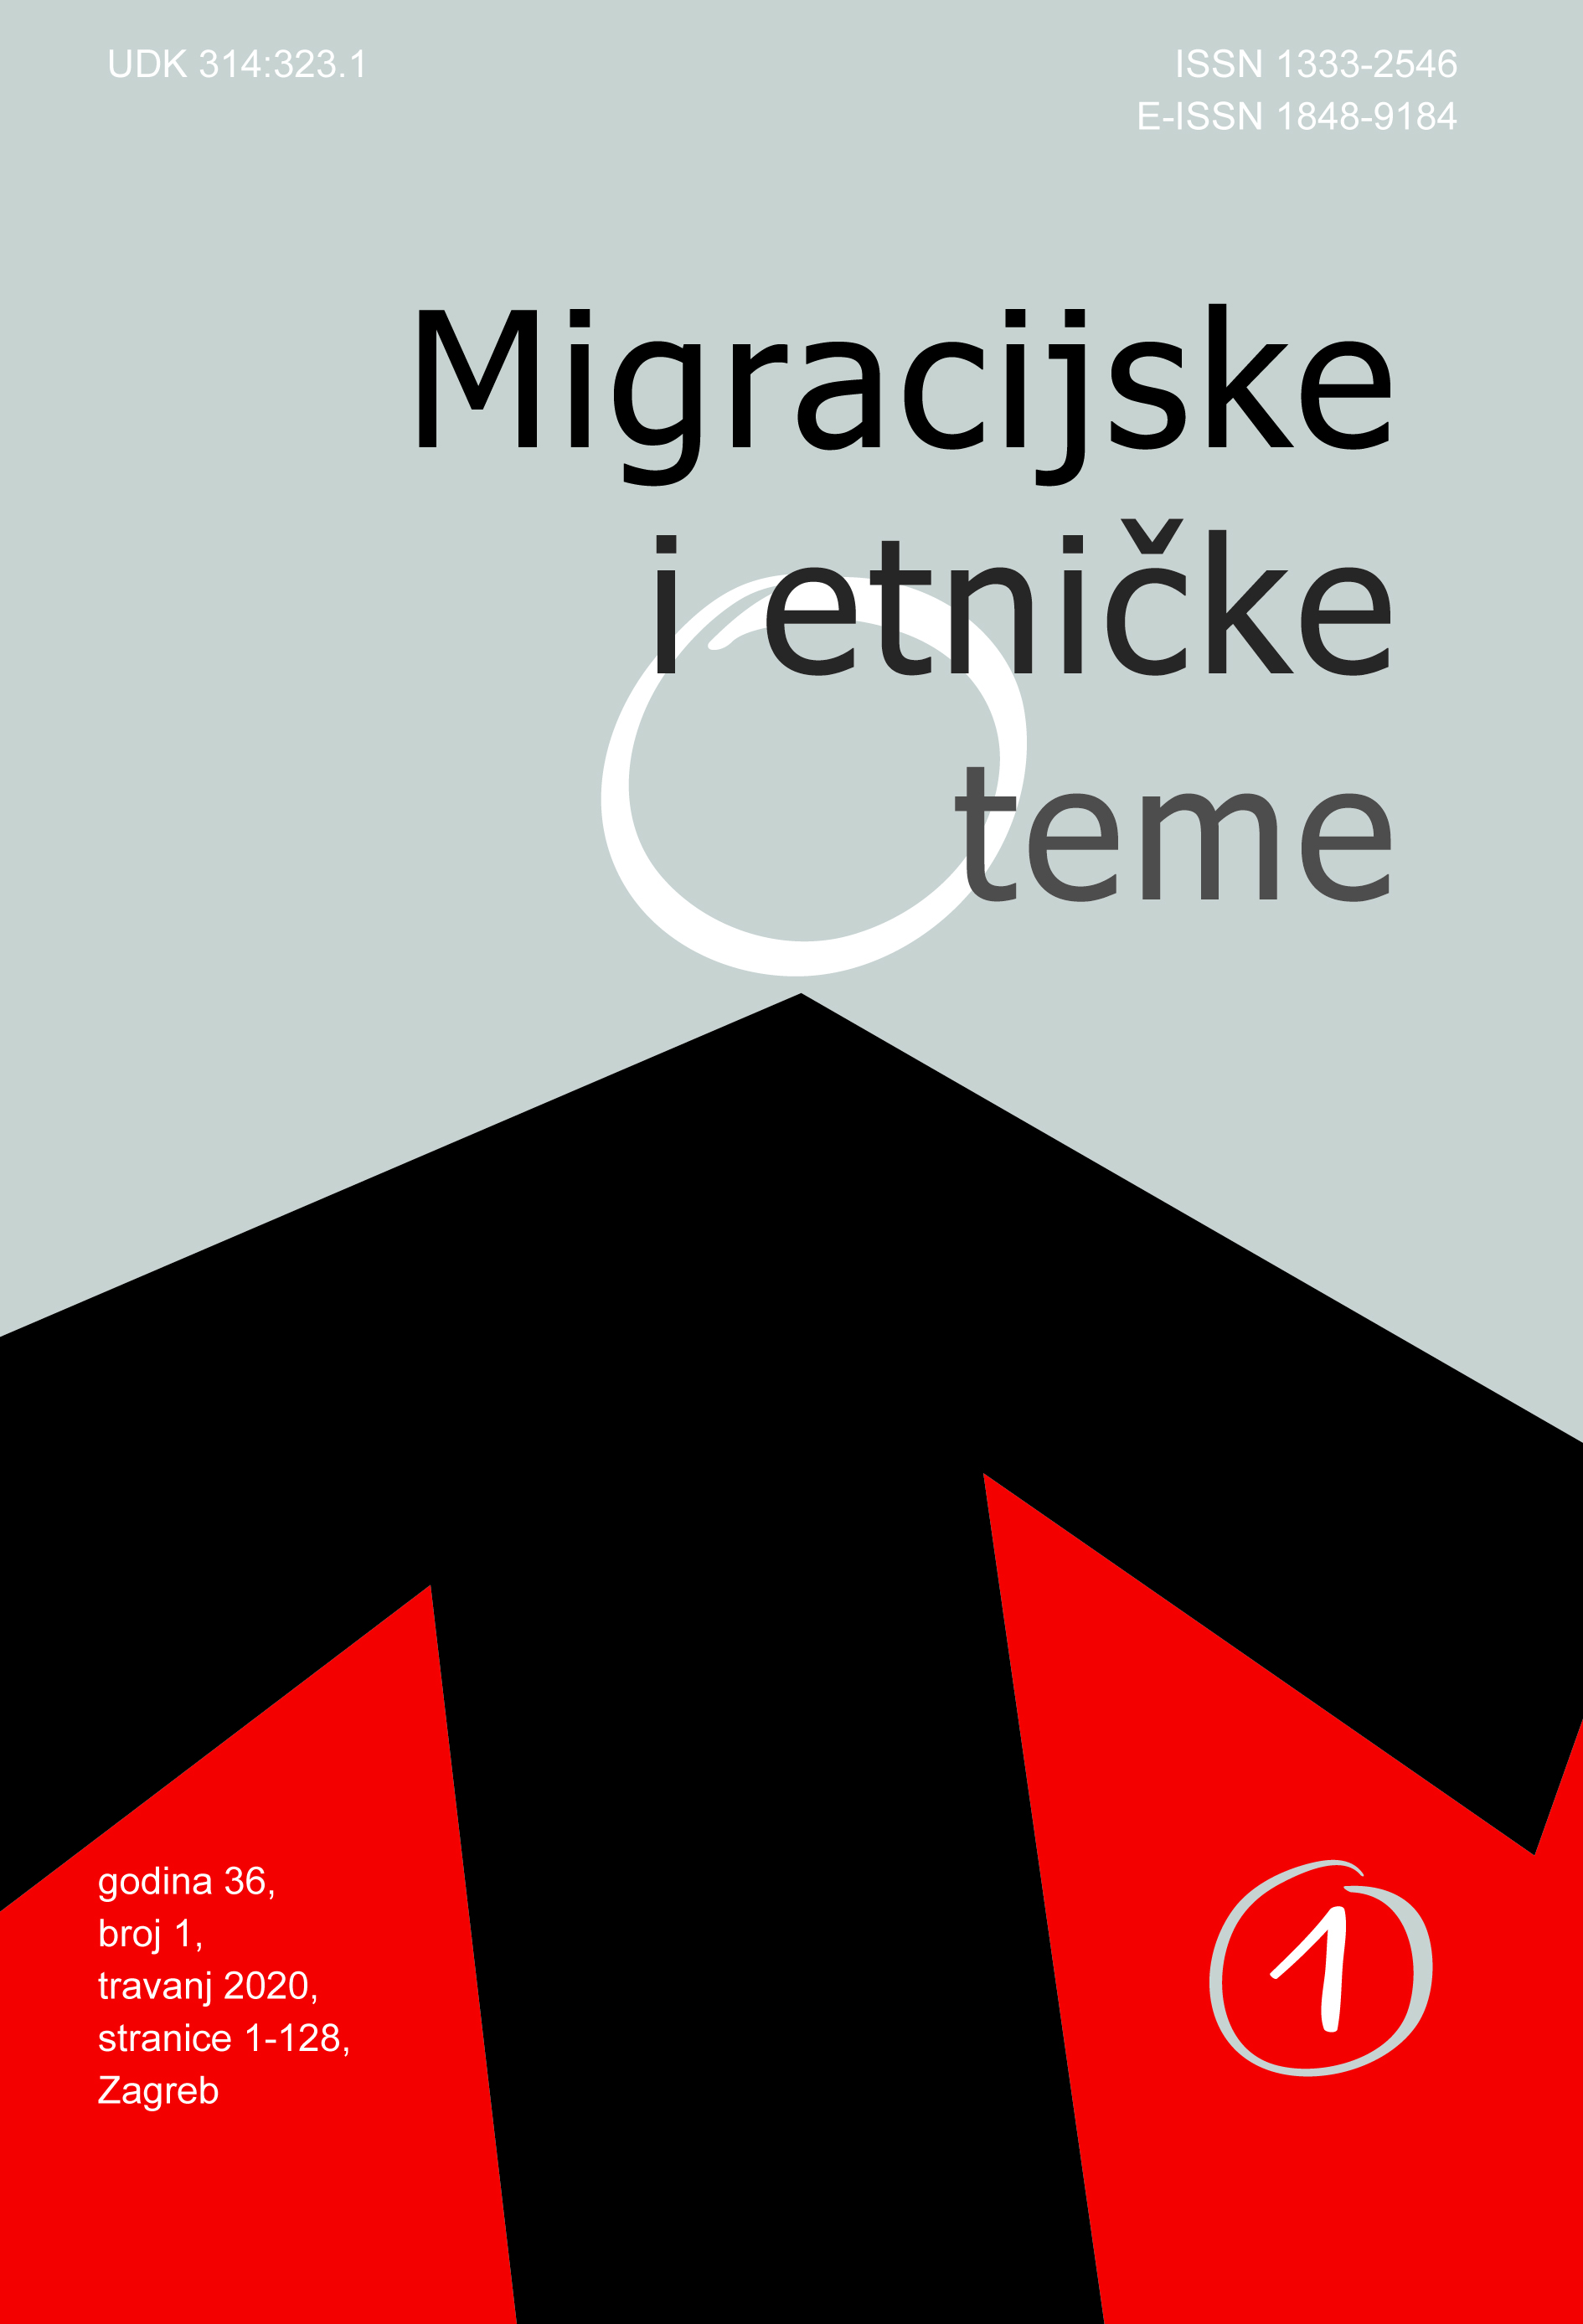 Bibliografija radova o migracijama objavljenih u znanstvenim časopisima dostupnim na portalu Hrčak (2009. – 2019.)